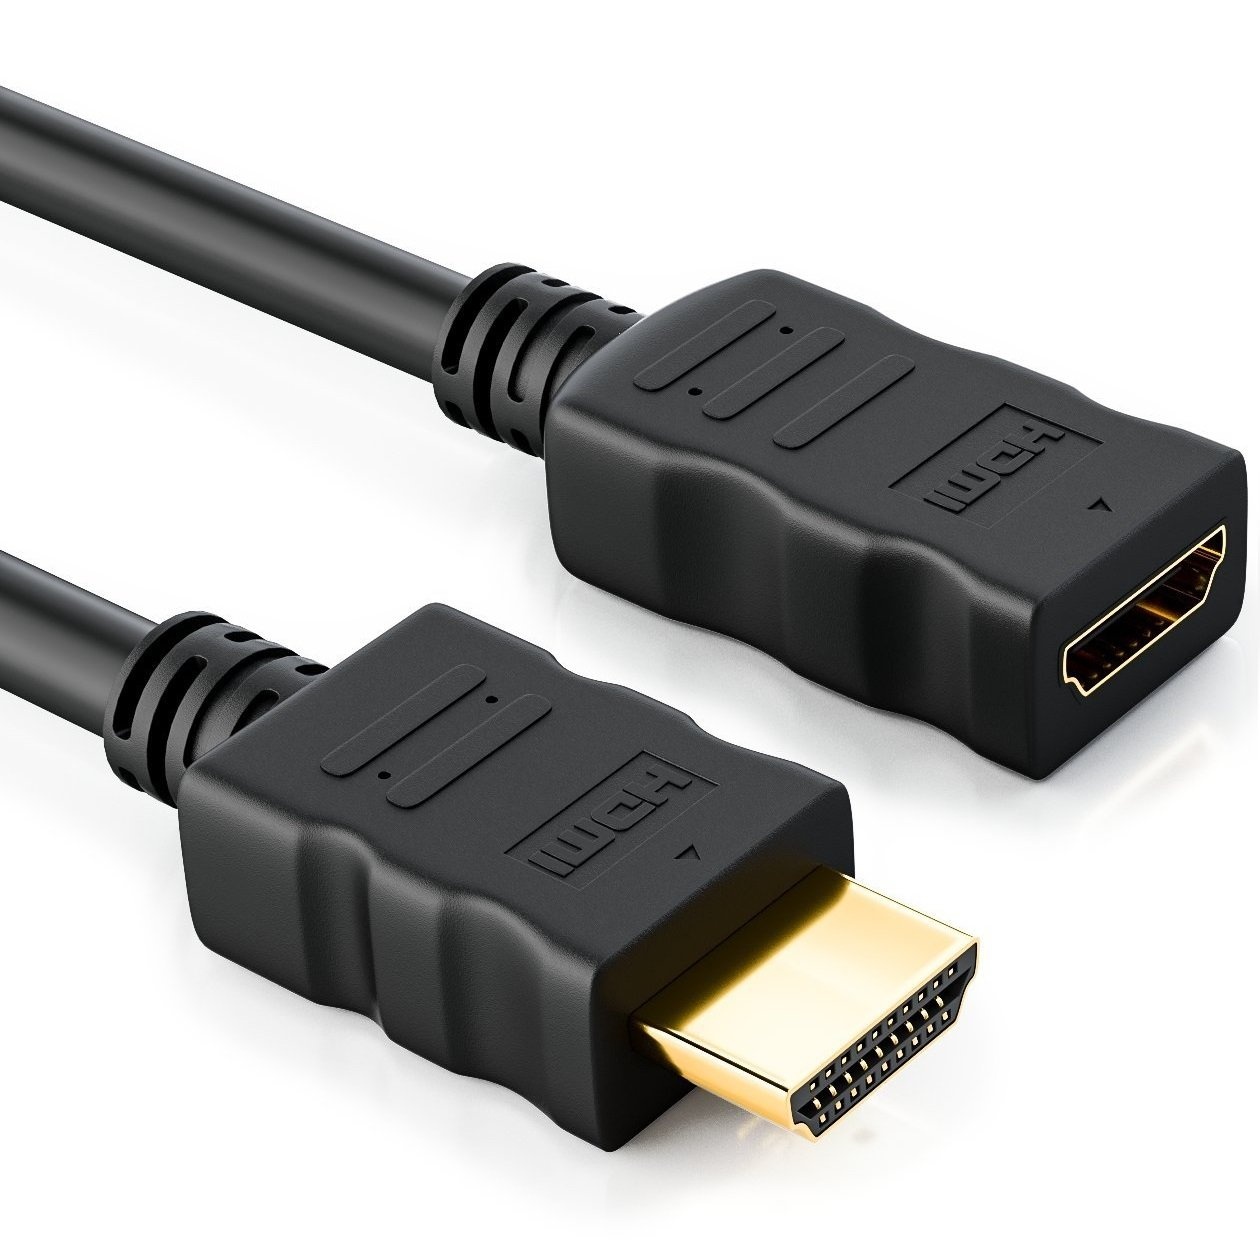 deleyCON 5m HDMI Verlängerung Kabel - Kompatibel zu HDMI 2.0a/b/1.4a - UHD 4K HDR 3D 1080p 2160p ARC - High Speed mit Ethernet - Schwarz